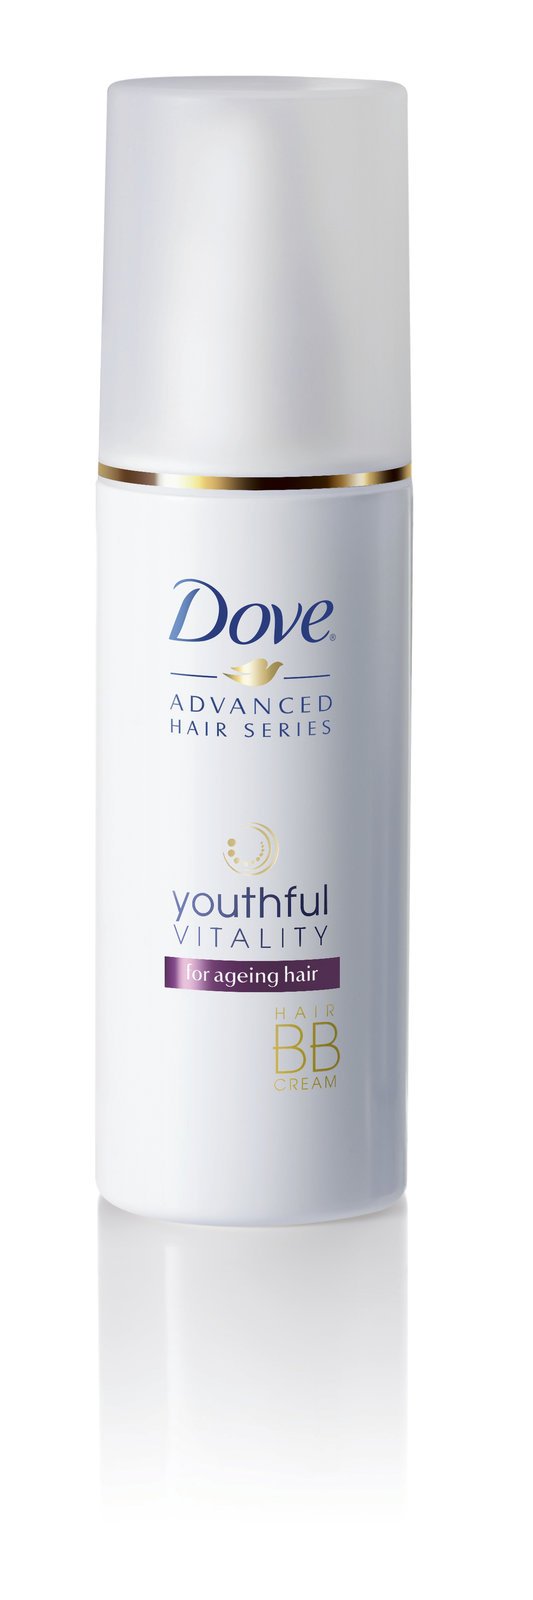 Dove, vlasový BB krém Youthful Vitality, 150 kč, koupíte v síti drogerií